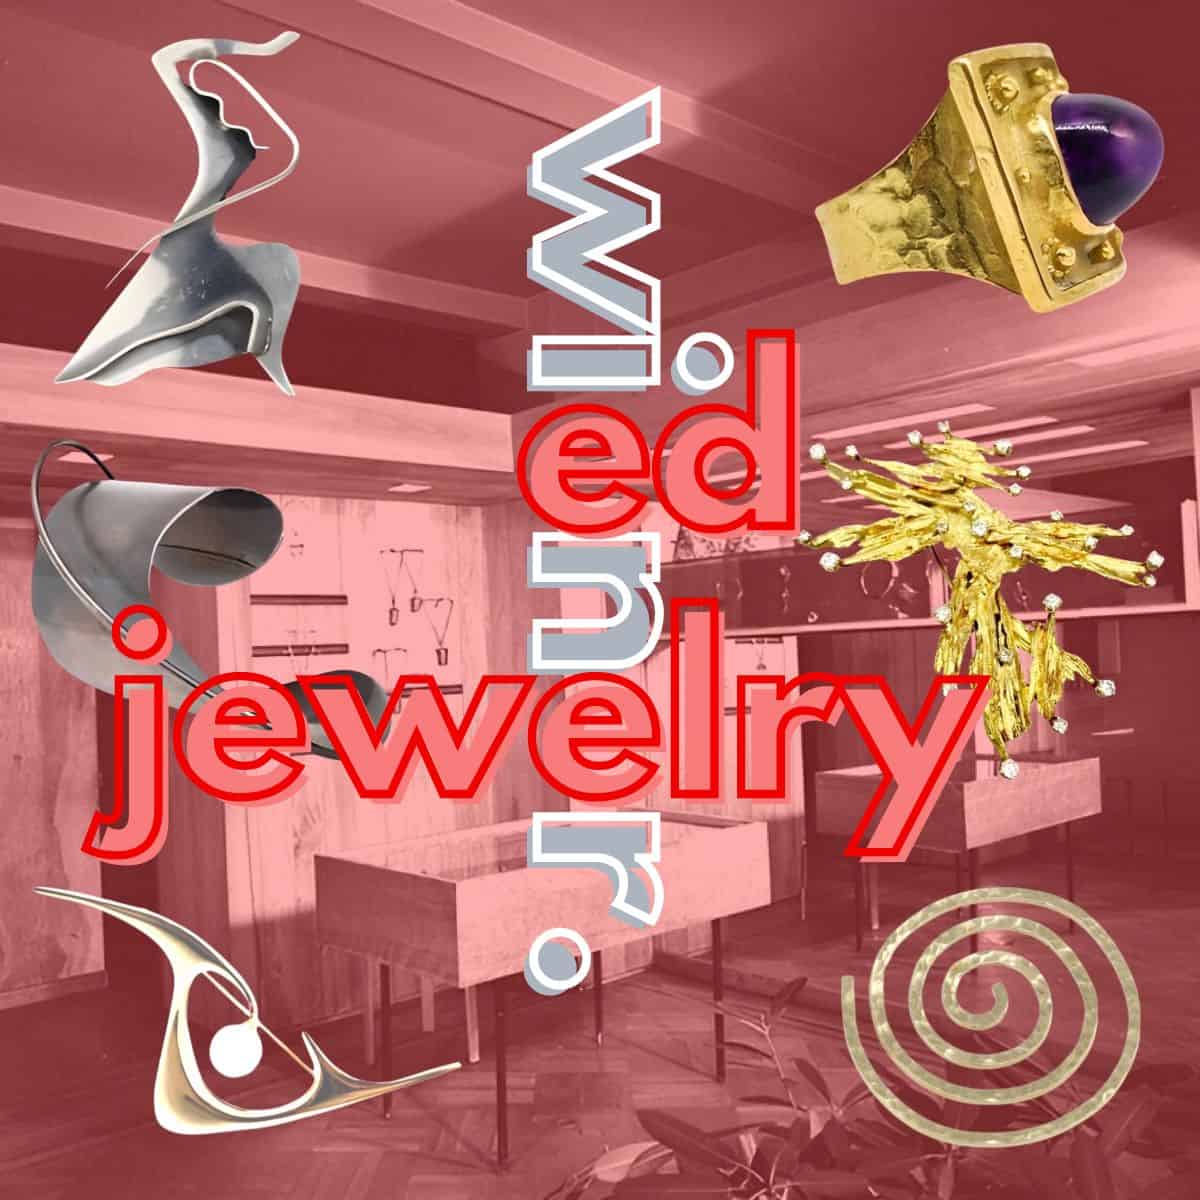 Ed Weiner Jewelry featured